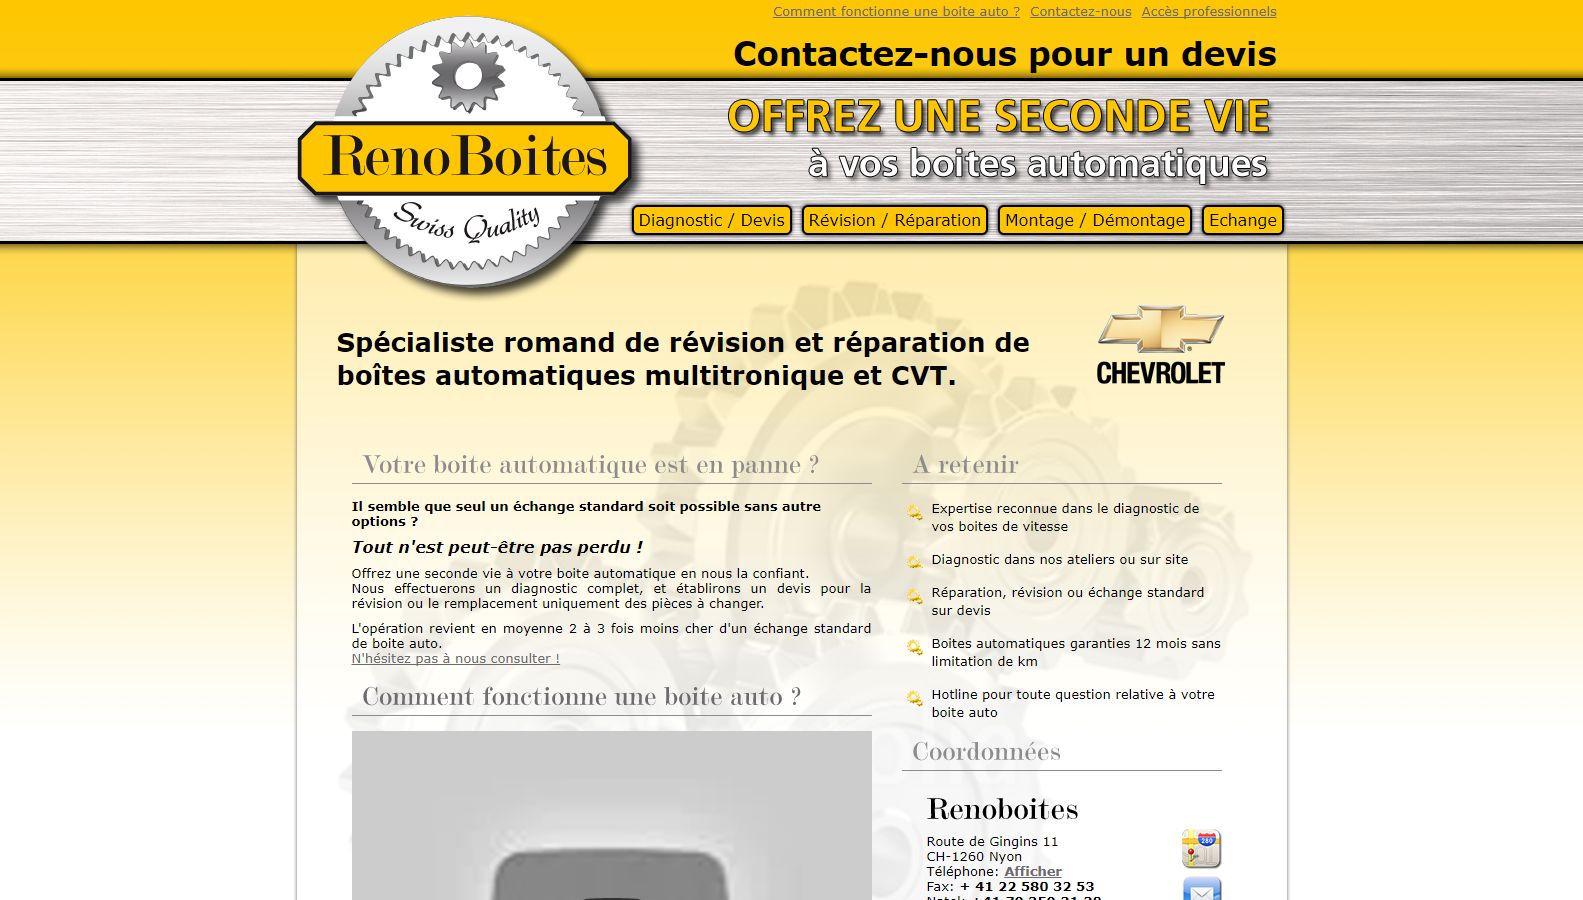 Réalisation RP2I (Romaric Pibolleau): Renoboites - Site web Suisse + mise en place et suivi de campagnes Google Adwords